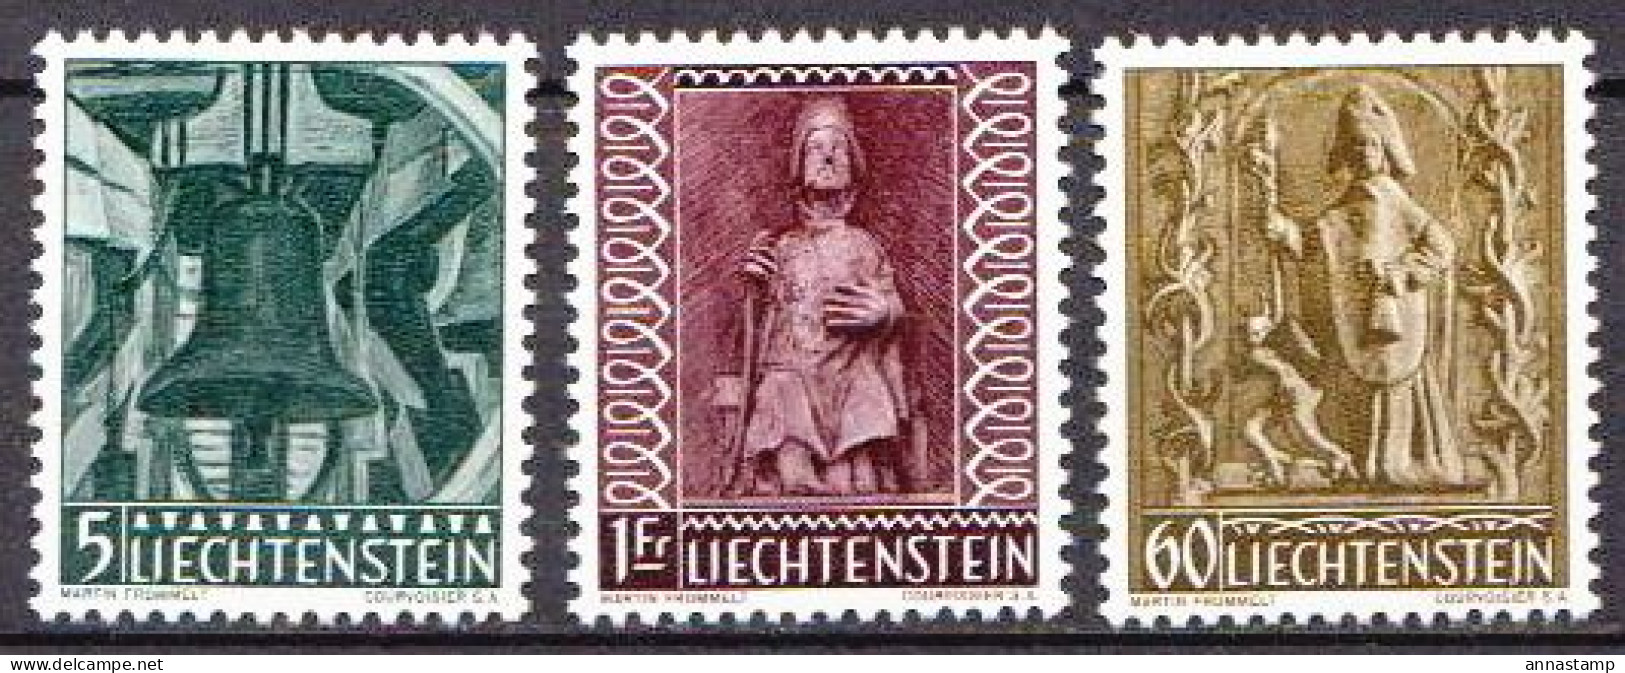 Liechtenstein MNH Set - Christmas